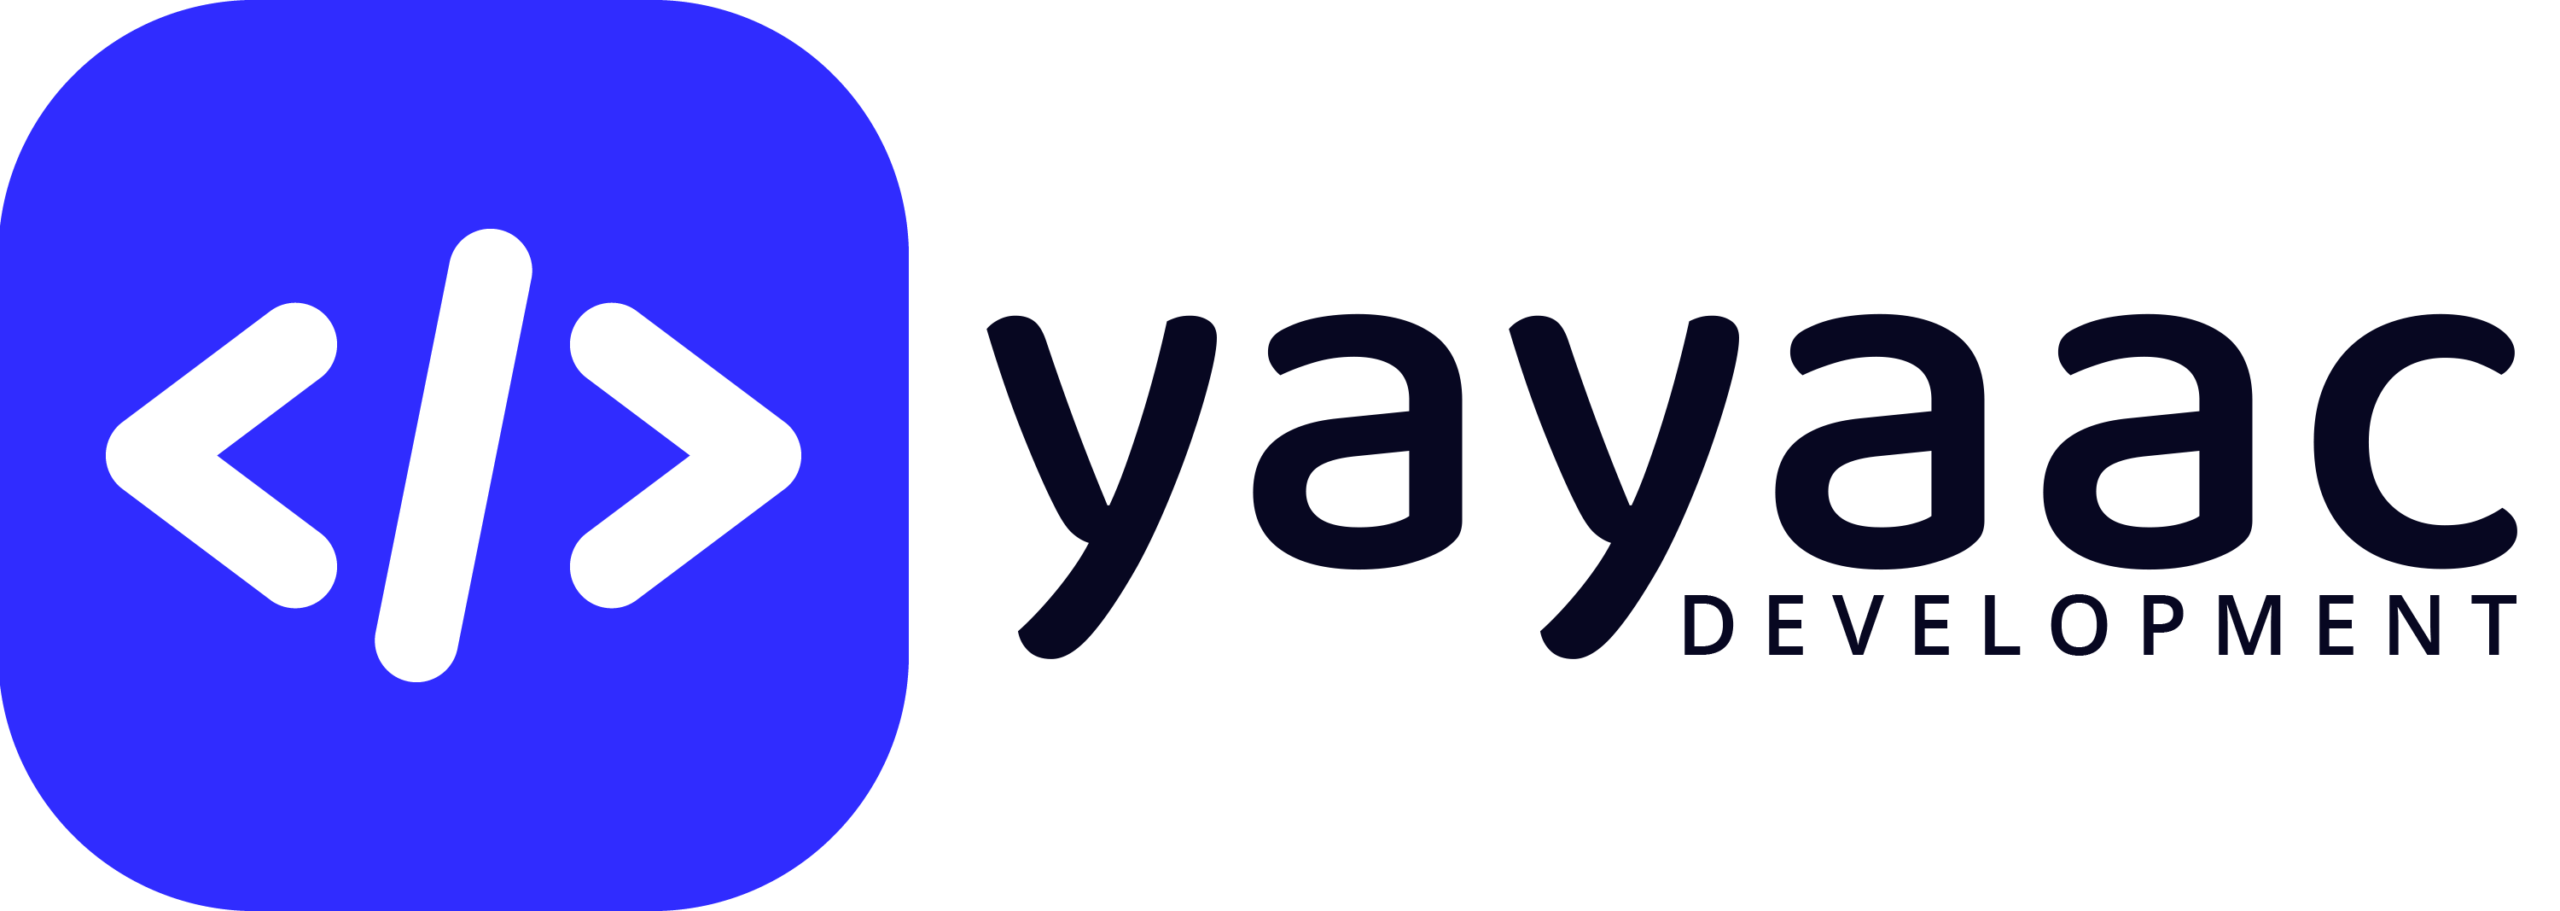 Yayaac Development